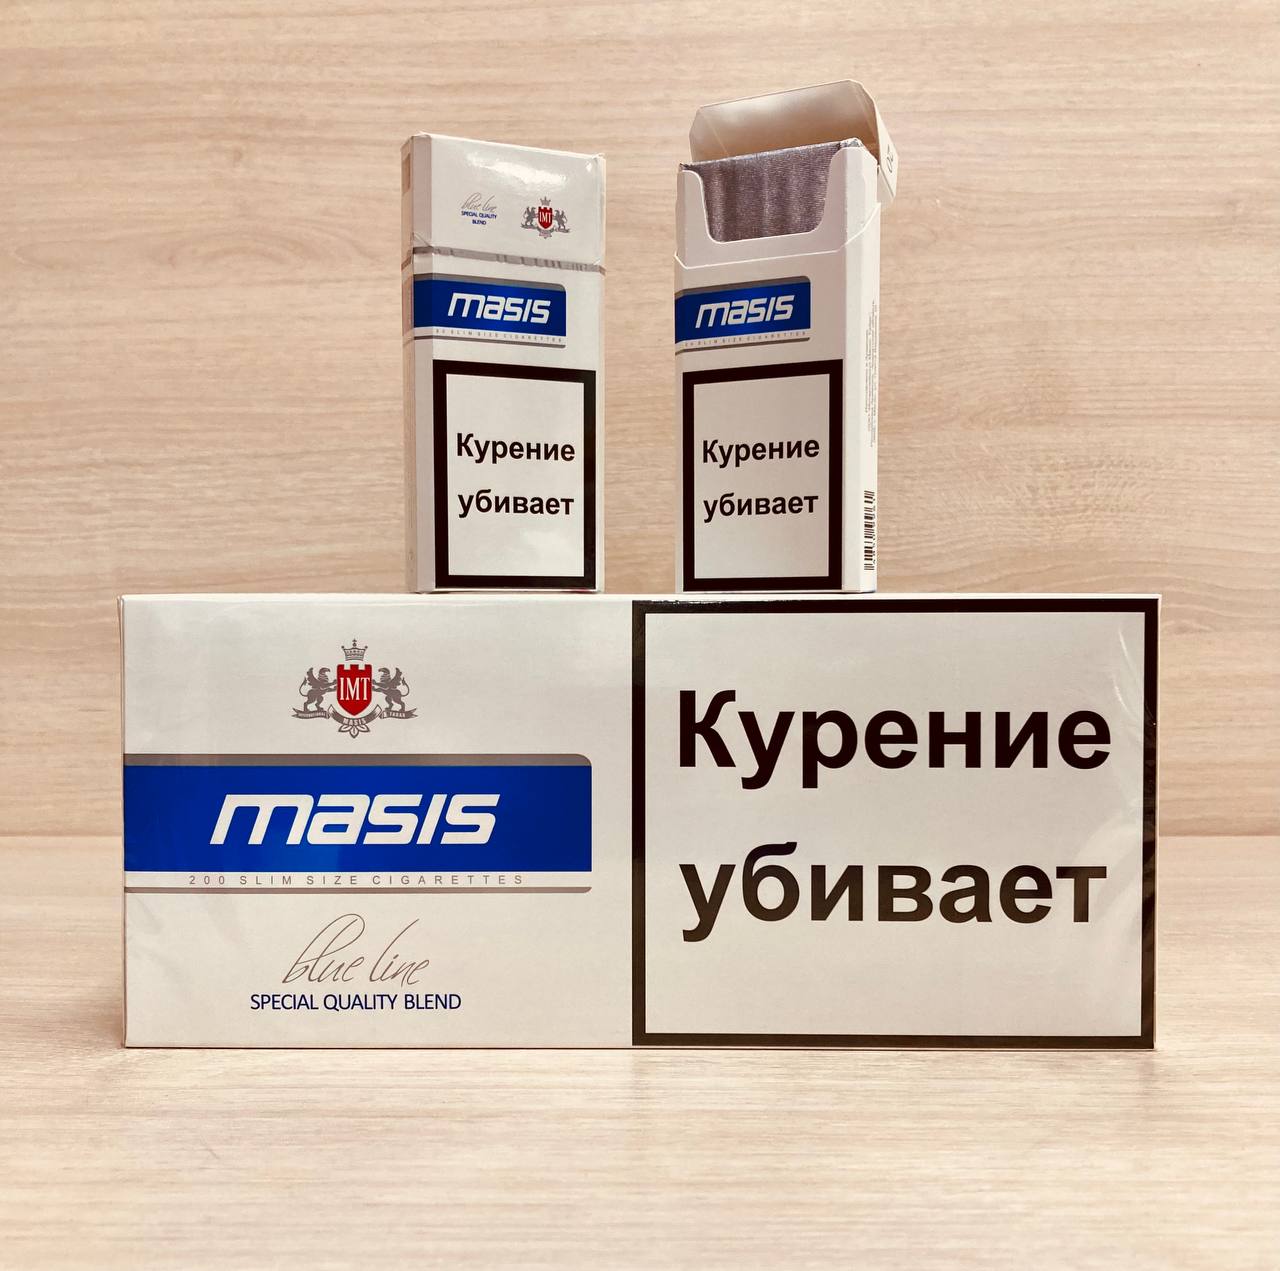 Купить армянские сигареты в интернет. Армянские сигареты Масис. Сигареты Масис. Армянские сигареты Masis. Пищевые сигареты.